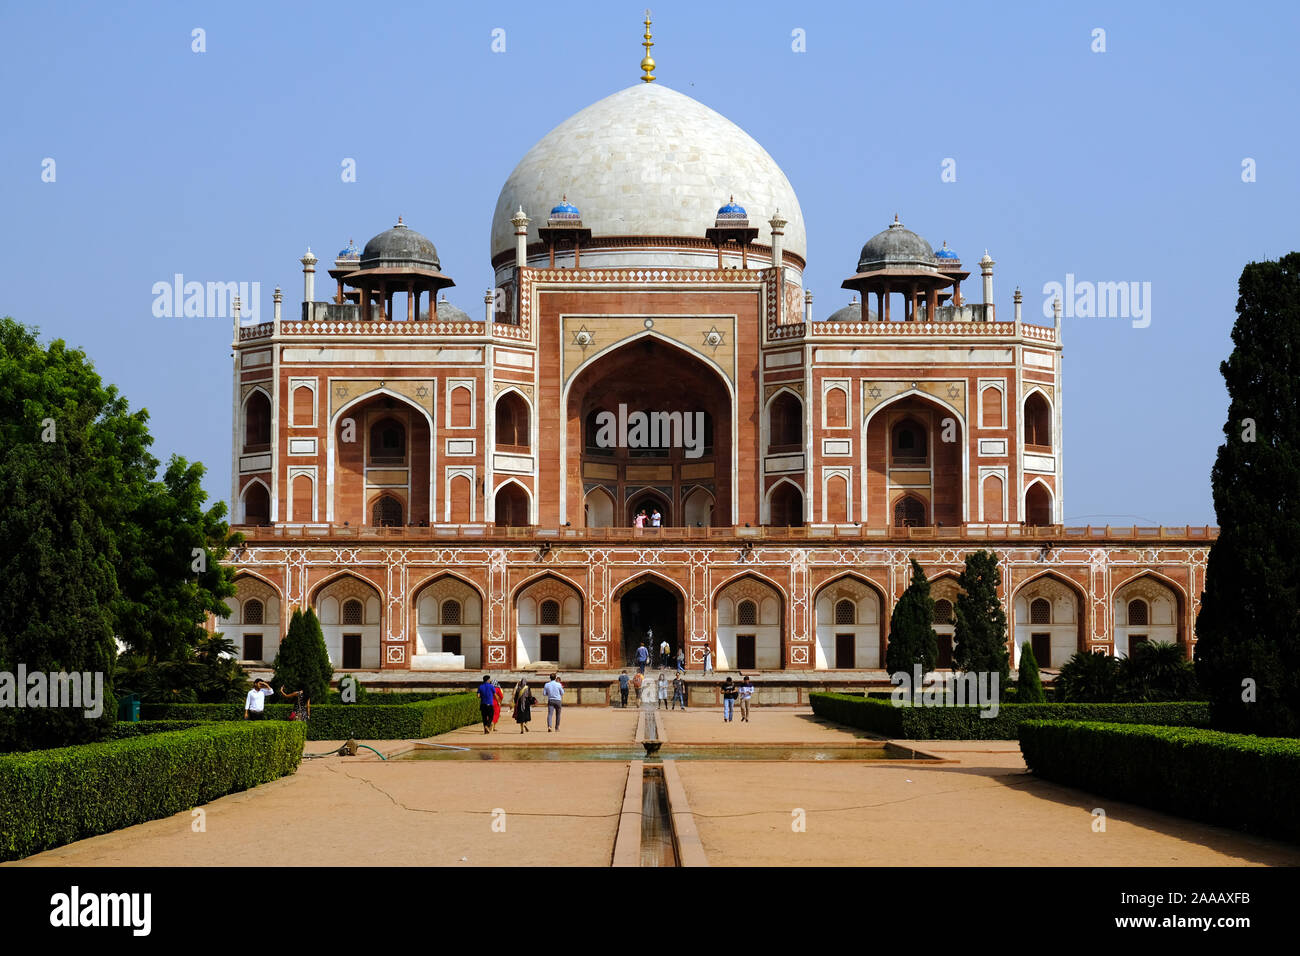 Storico e distintivo - architettura islamica in India Delhi Humayun tomba Foto Stock